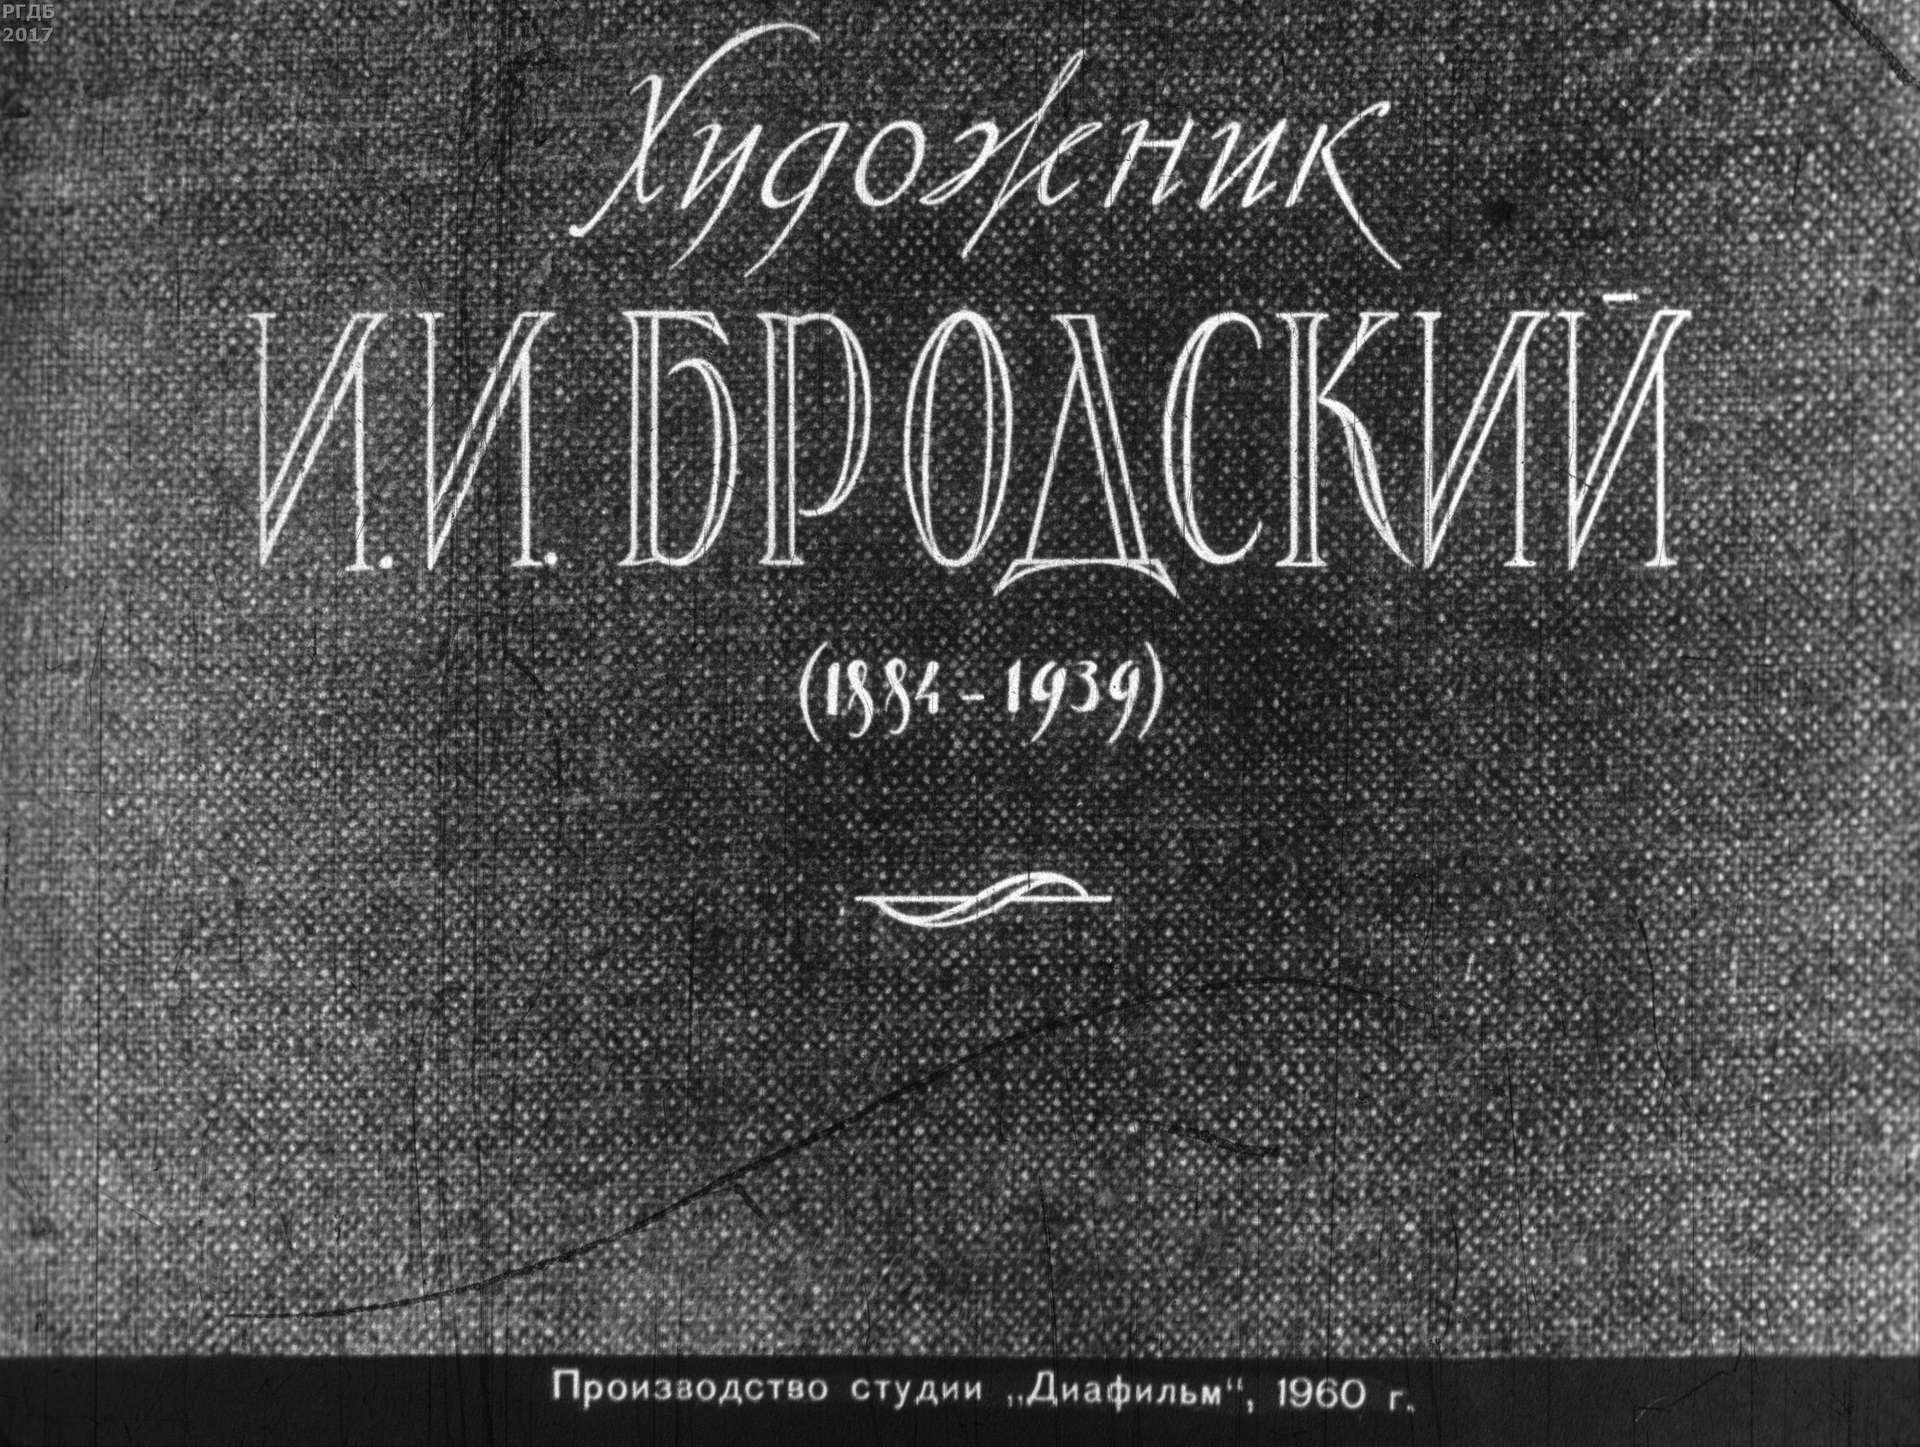 Художник И. И. Бродский (1884-1939)